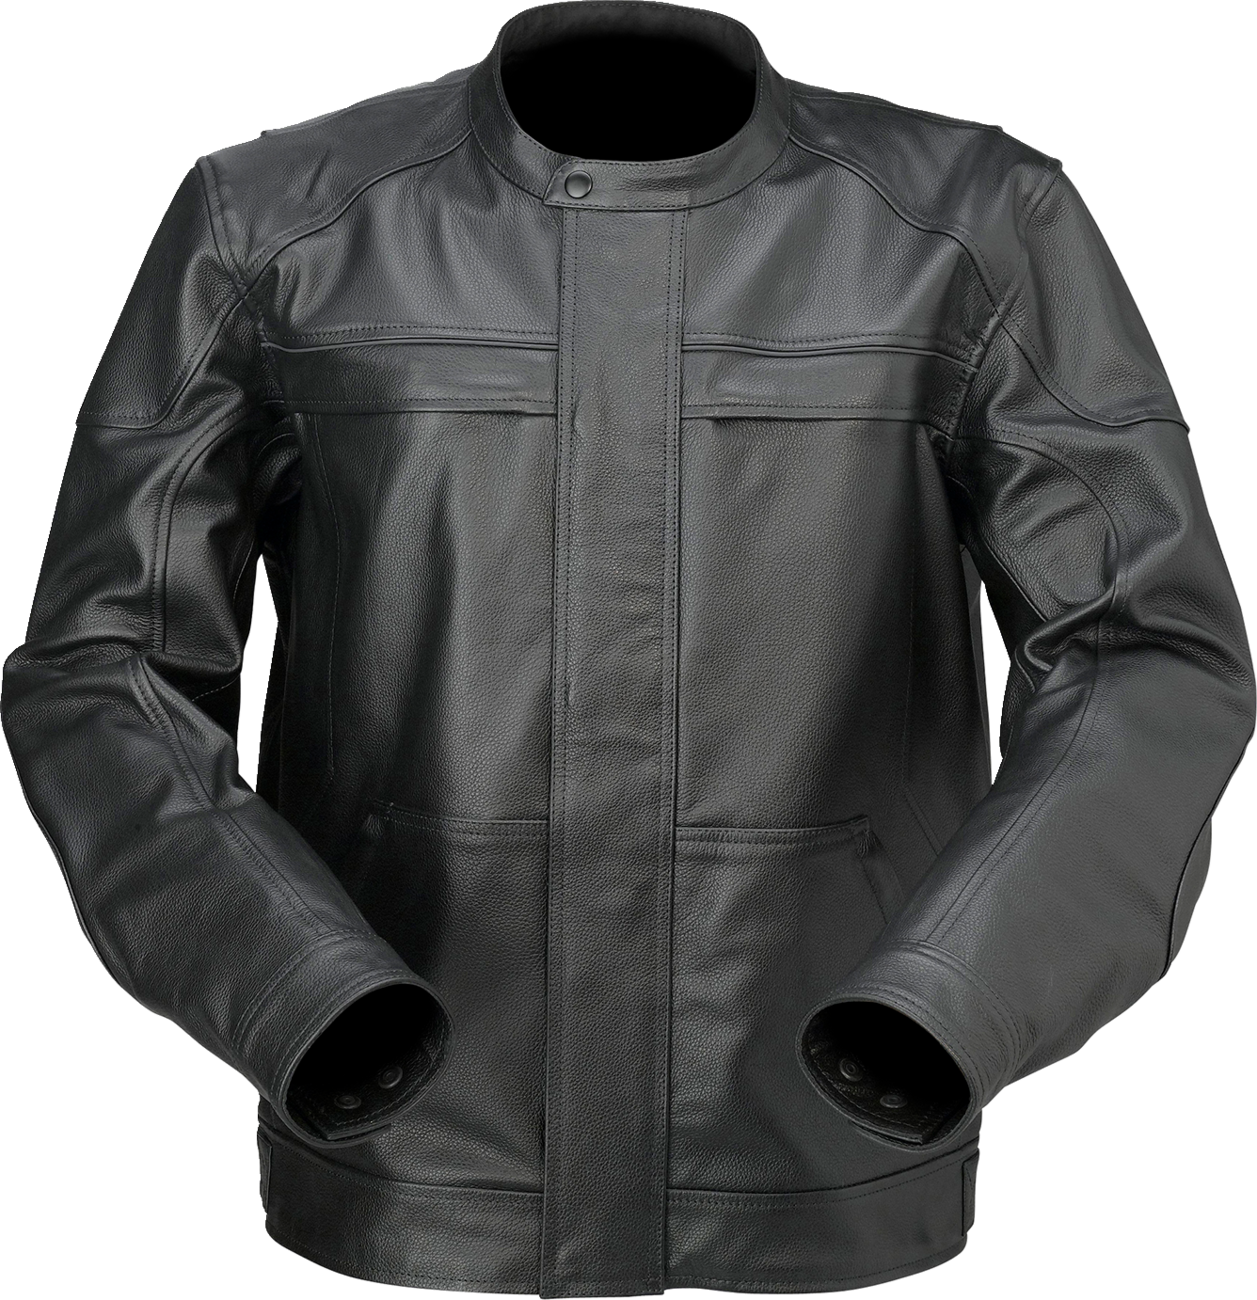 Z1R Justifier Leather Jacket - Black - XL 2810-3915